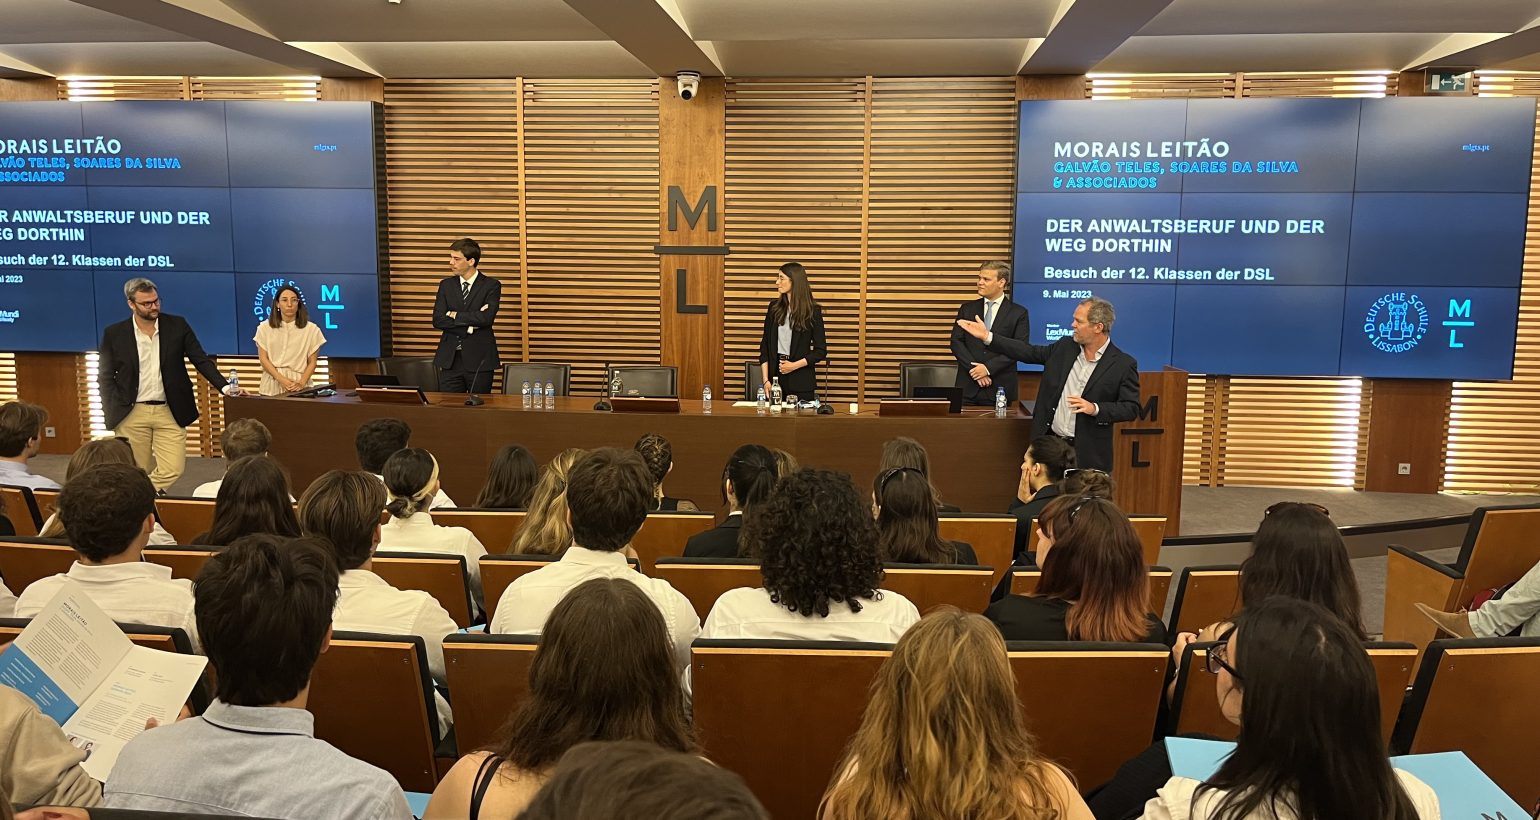 Deutsche Schule Lissabon: Besuch der Anwaltskanzlei Morais Leitão und Preis beim Landeswettbewerb Jugend forscht!